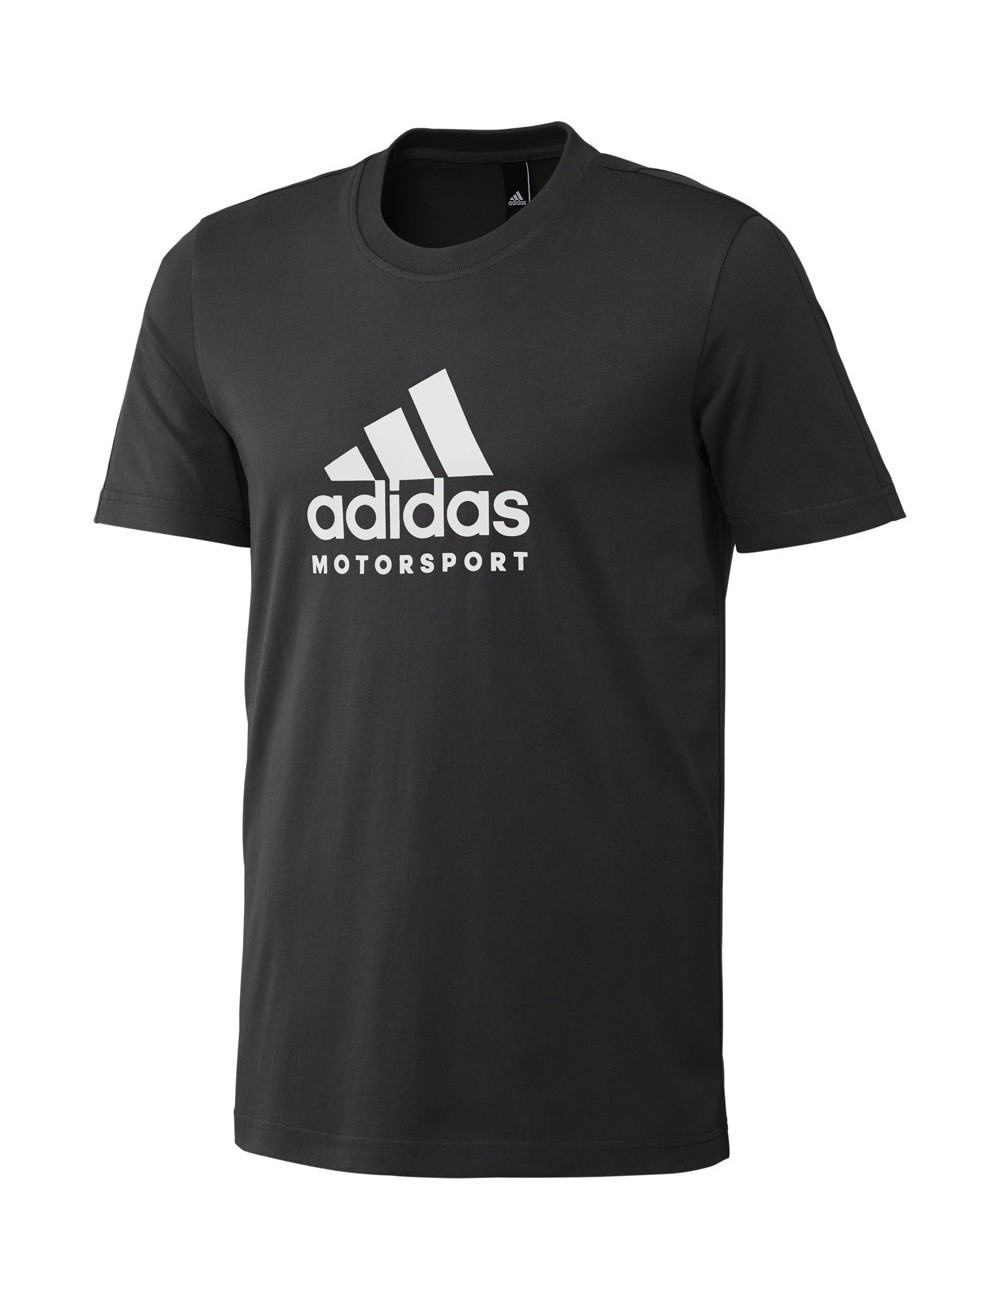 Adidas Motorsport T-Shirt weiß / schwarz